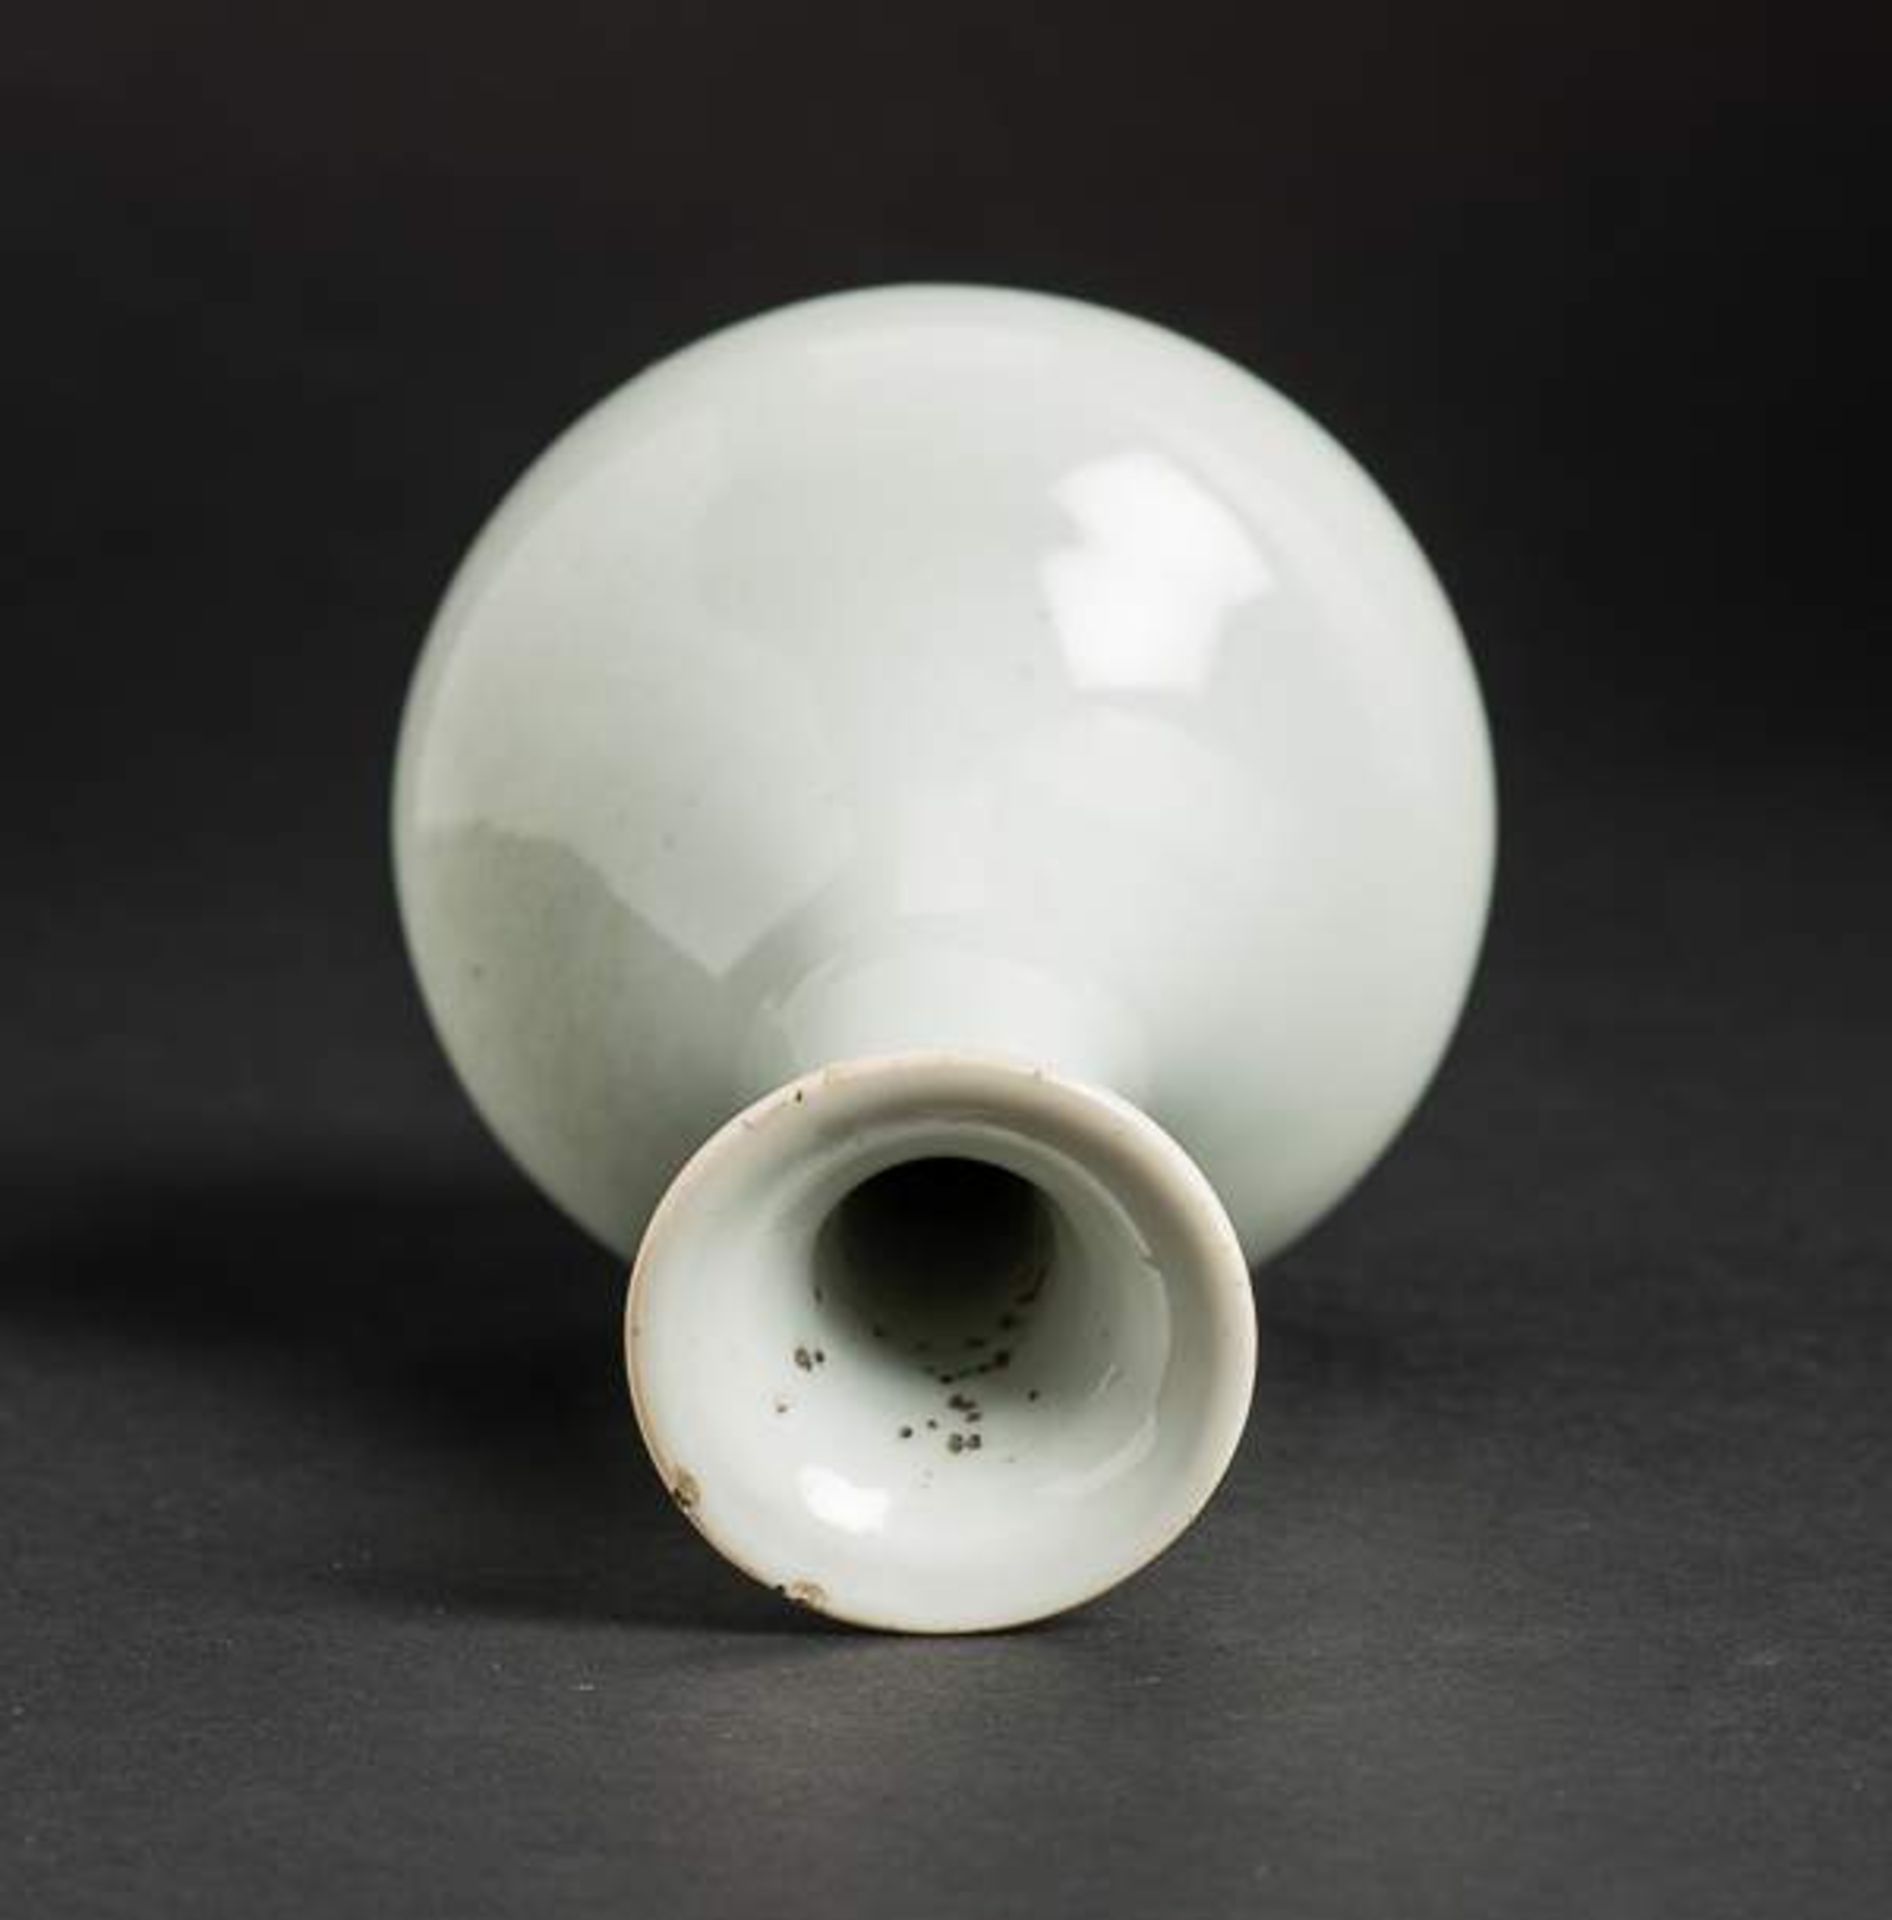 HELLBLAUE VASE Porzellan. China, späte Qing-Dynastie (1644-1911) Fein geförmte kleine Vase mit - Image 8 of 9